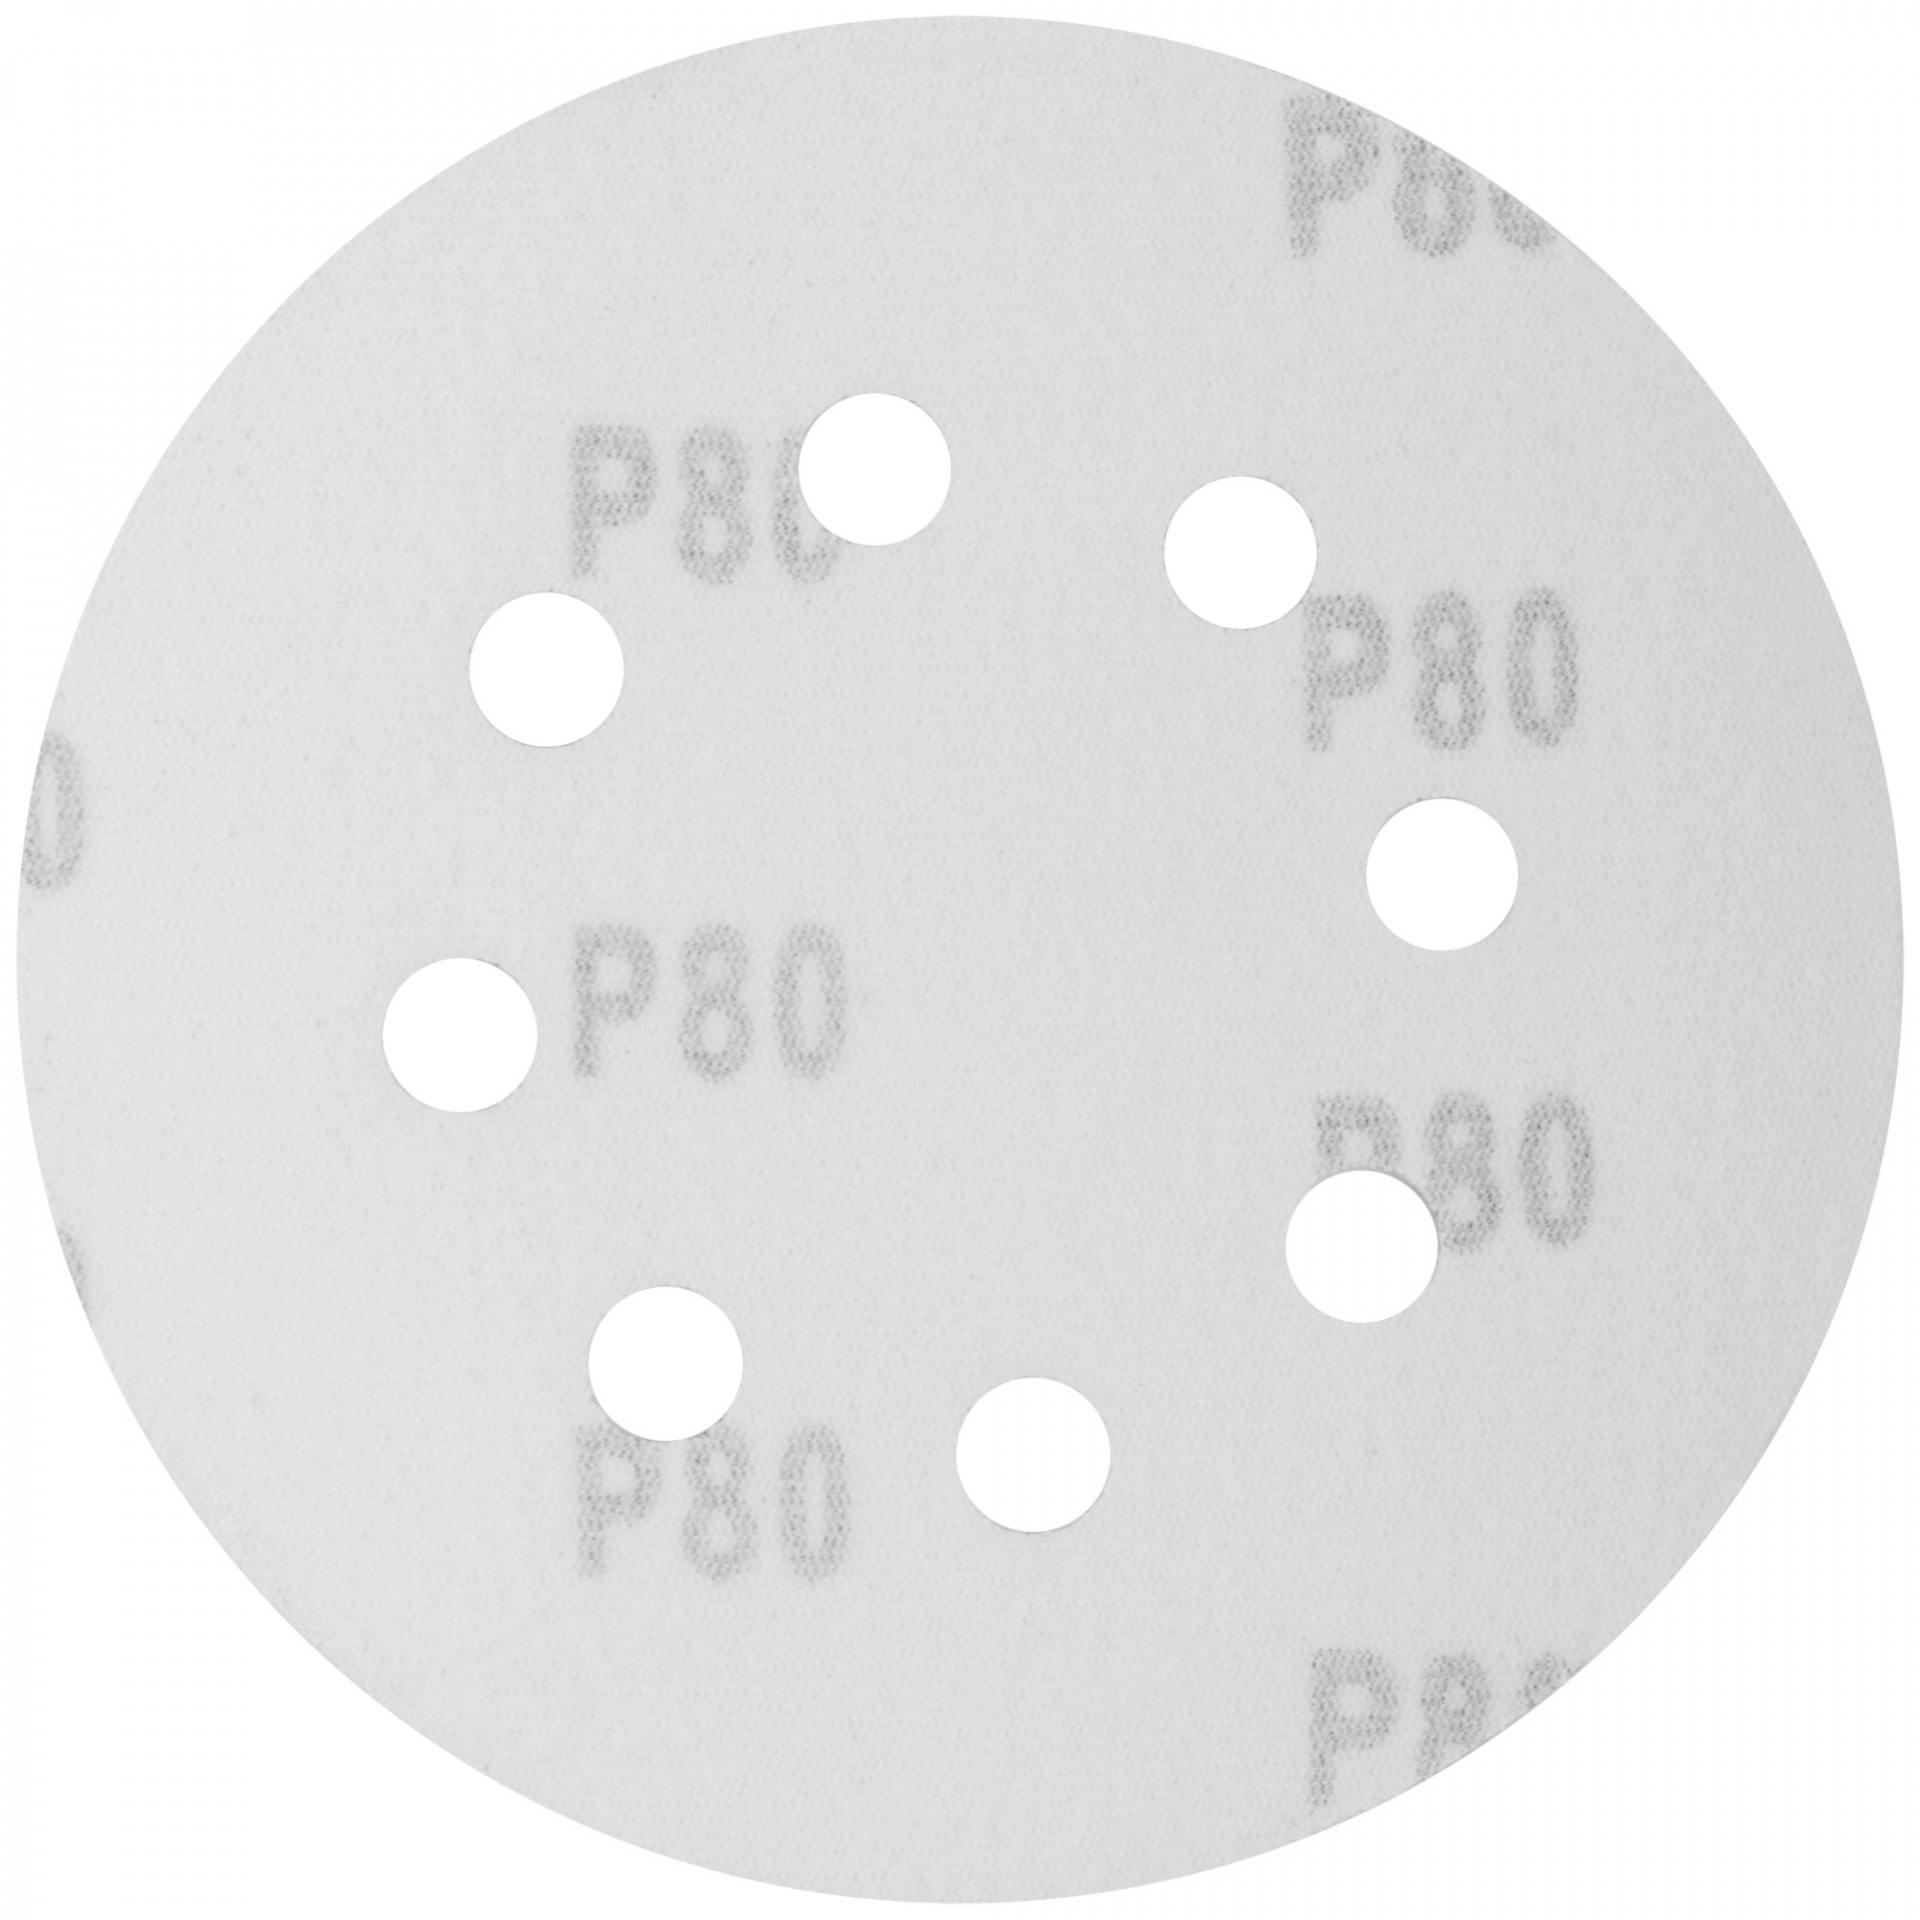 Круги шлифовальные с отверстиями (липучка), алюминий-оксидные, 125 мм, 5 шт. Р 80